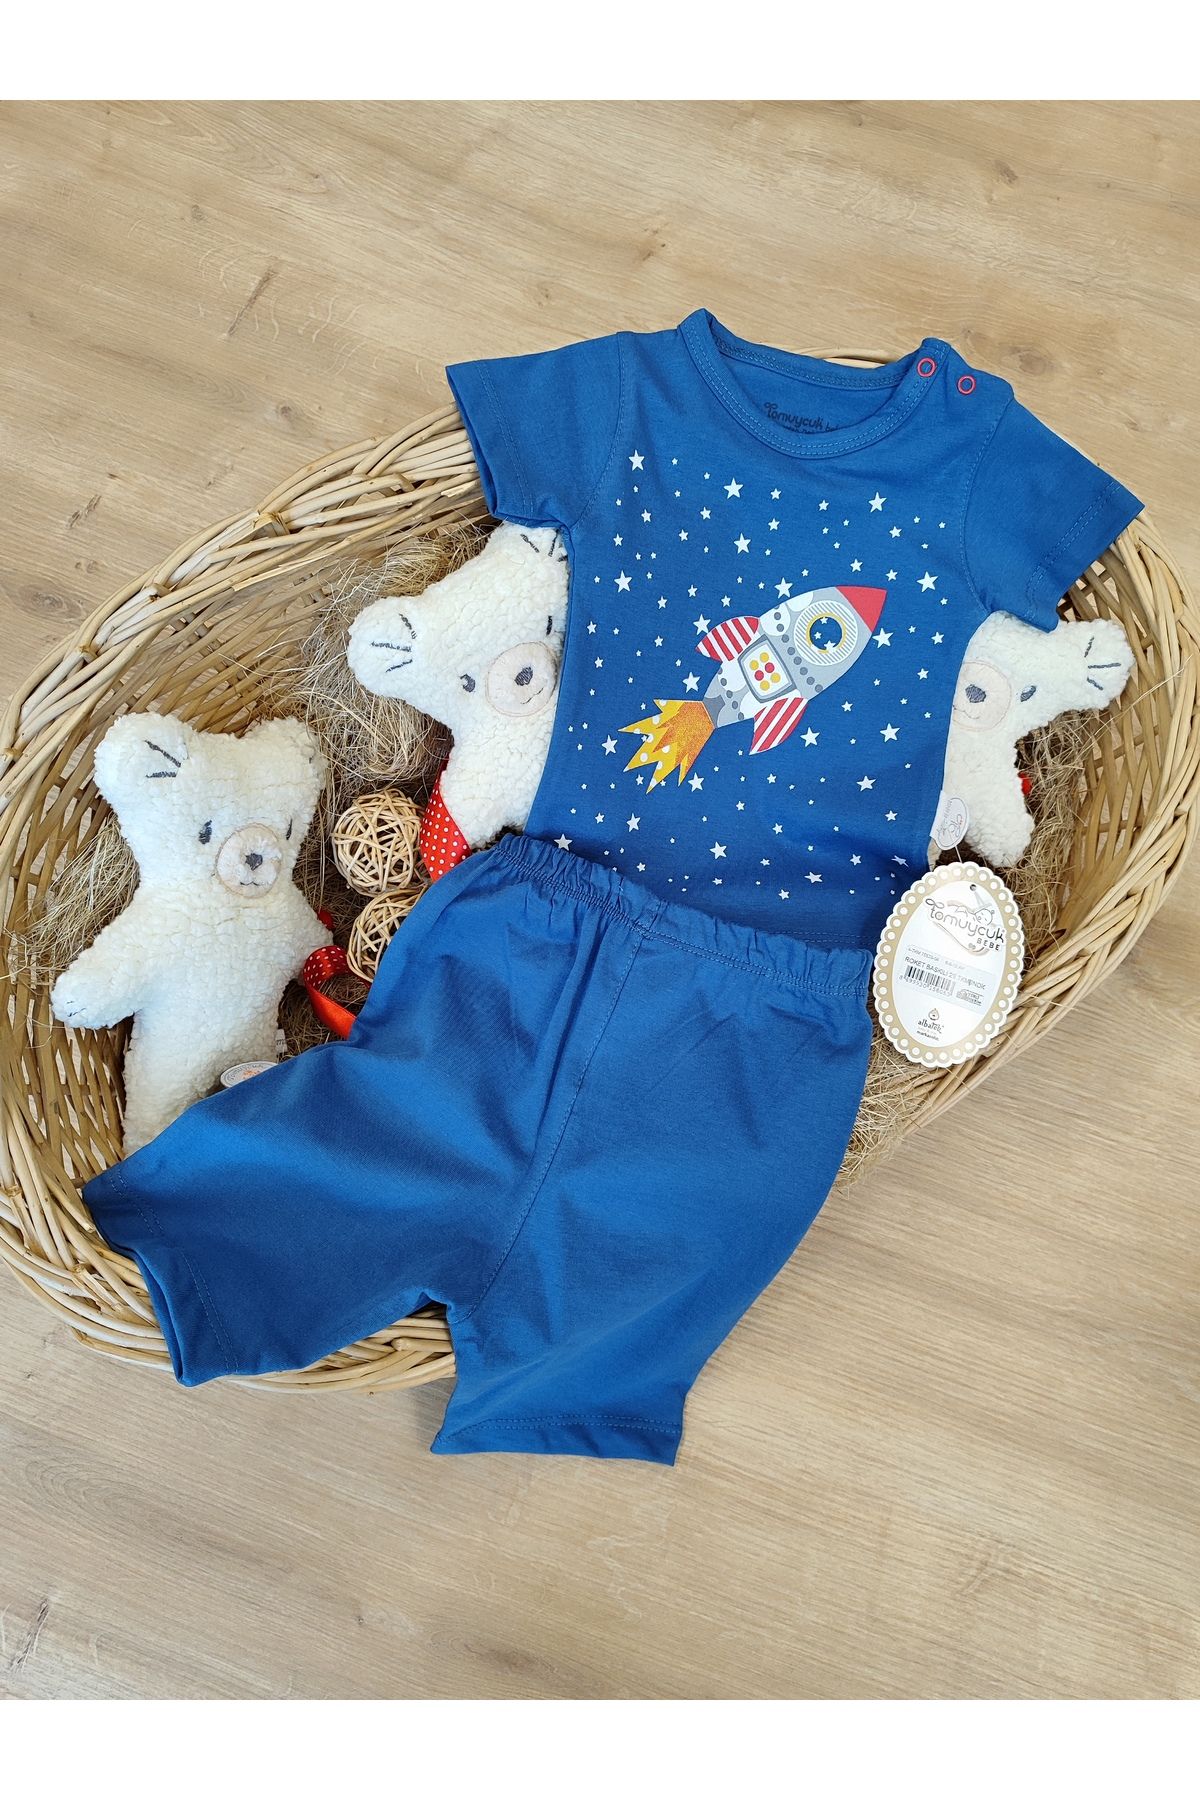 Tomuycuk 2'li Erkek Bebek Çocuk Takım Şortlu Yenidoğan Bebek Takımları Kıyafetleri Bebek Giyim Hediyelik